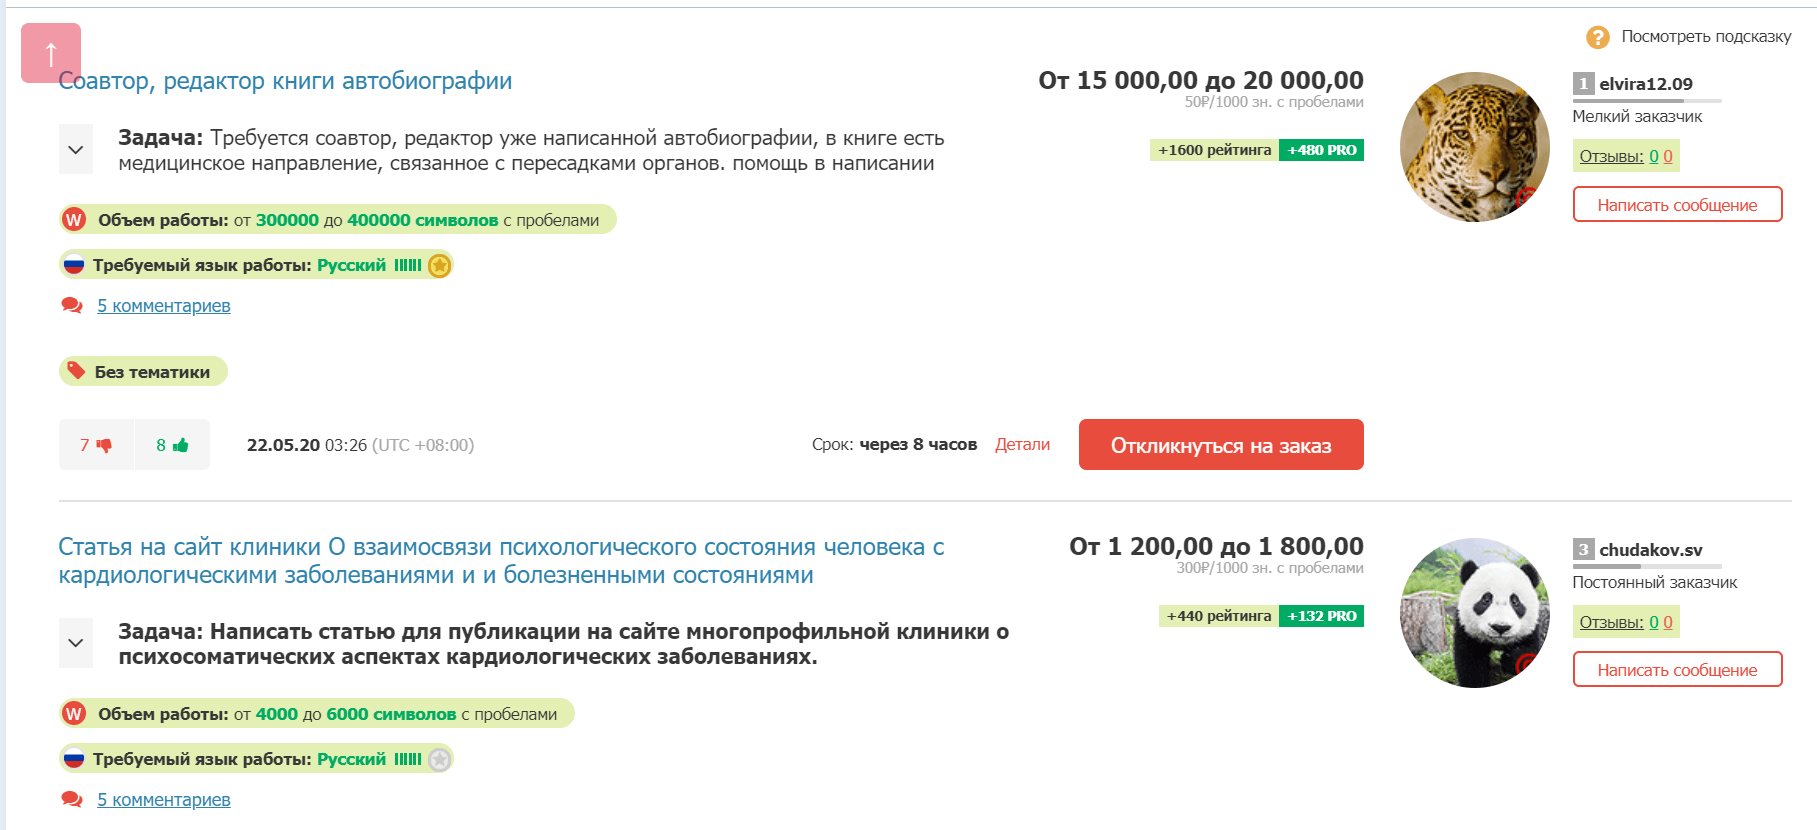 Заказы на Text.ru